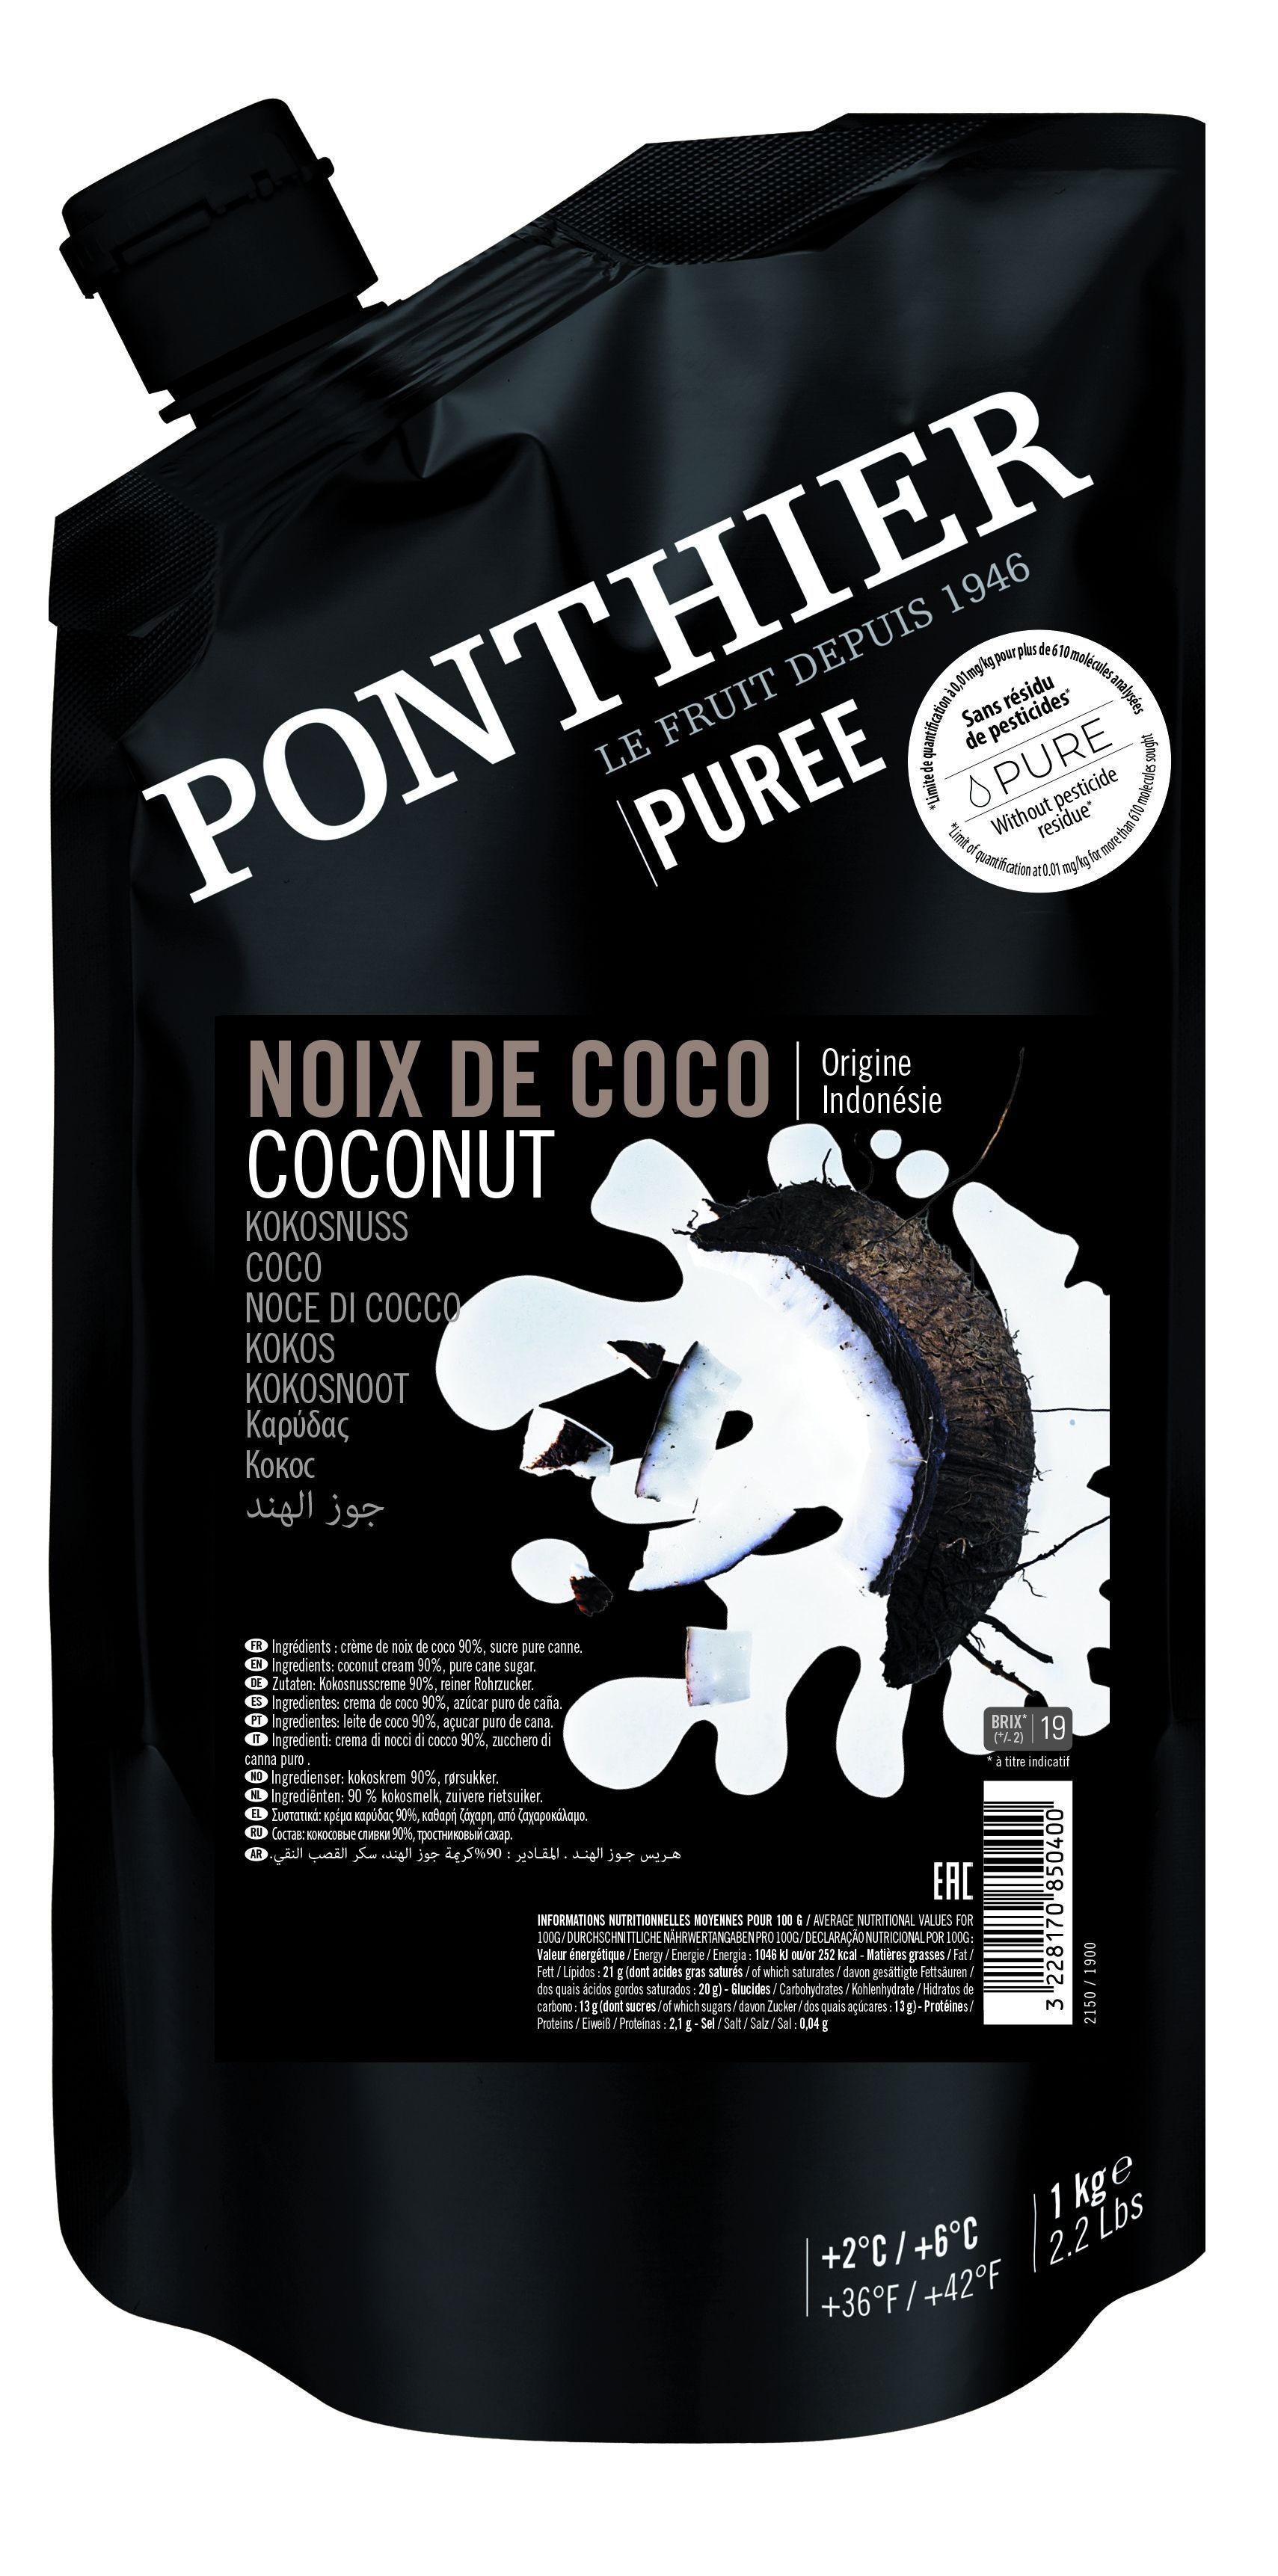 Ponthier Purées de Fruit Noix de Coco Intense 1kg